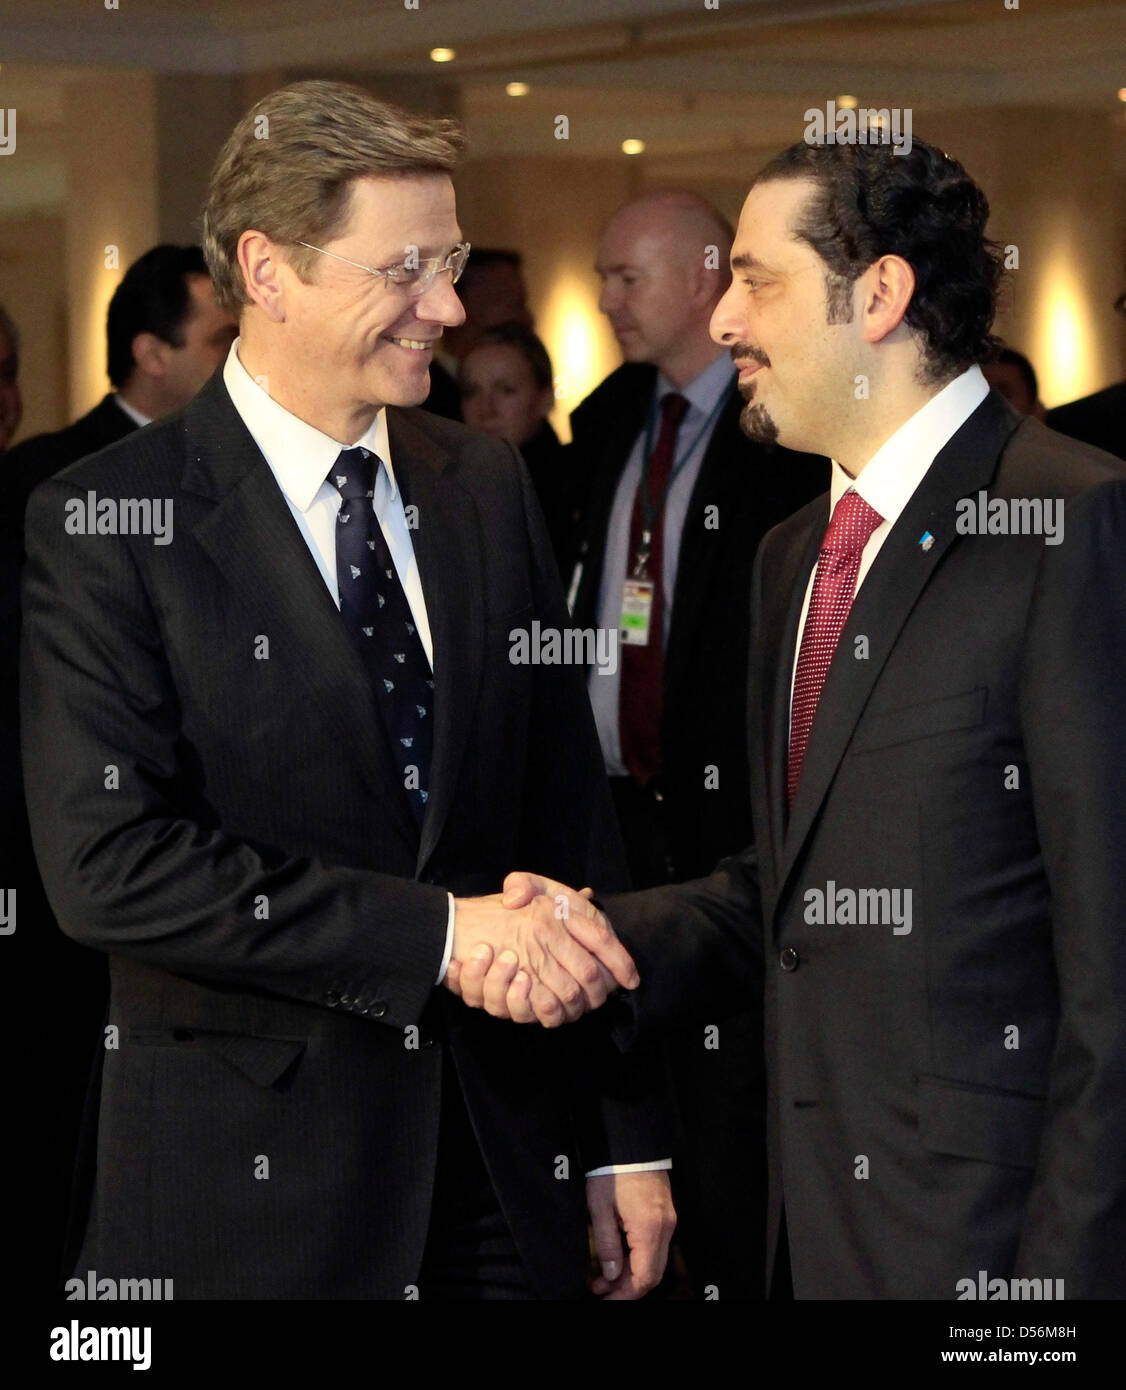 Libanesische Ministerpräsident Saad al-Hariri (R) begrüßt der deutsche Außenminister Guido Westerwelle zu bilateralen Gesprächen im Berliner Adlon Hotel, Deutschland, 15. März 2010. Foto: FABRIZIO BENSCH/REUTERS POOL Stockfoto